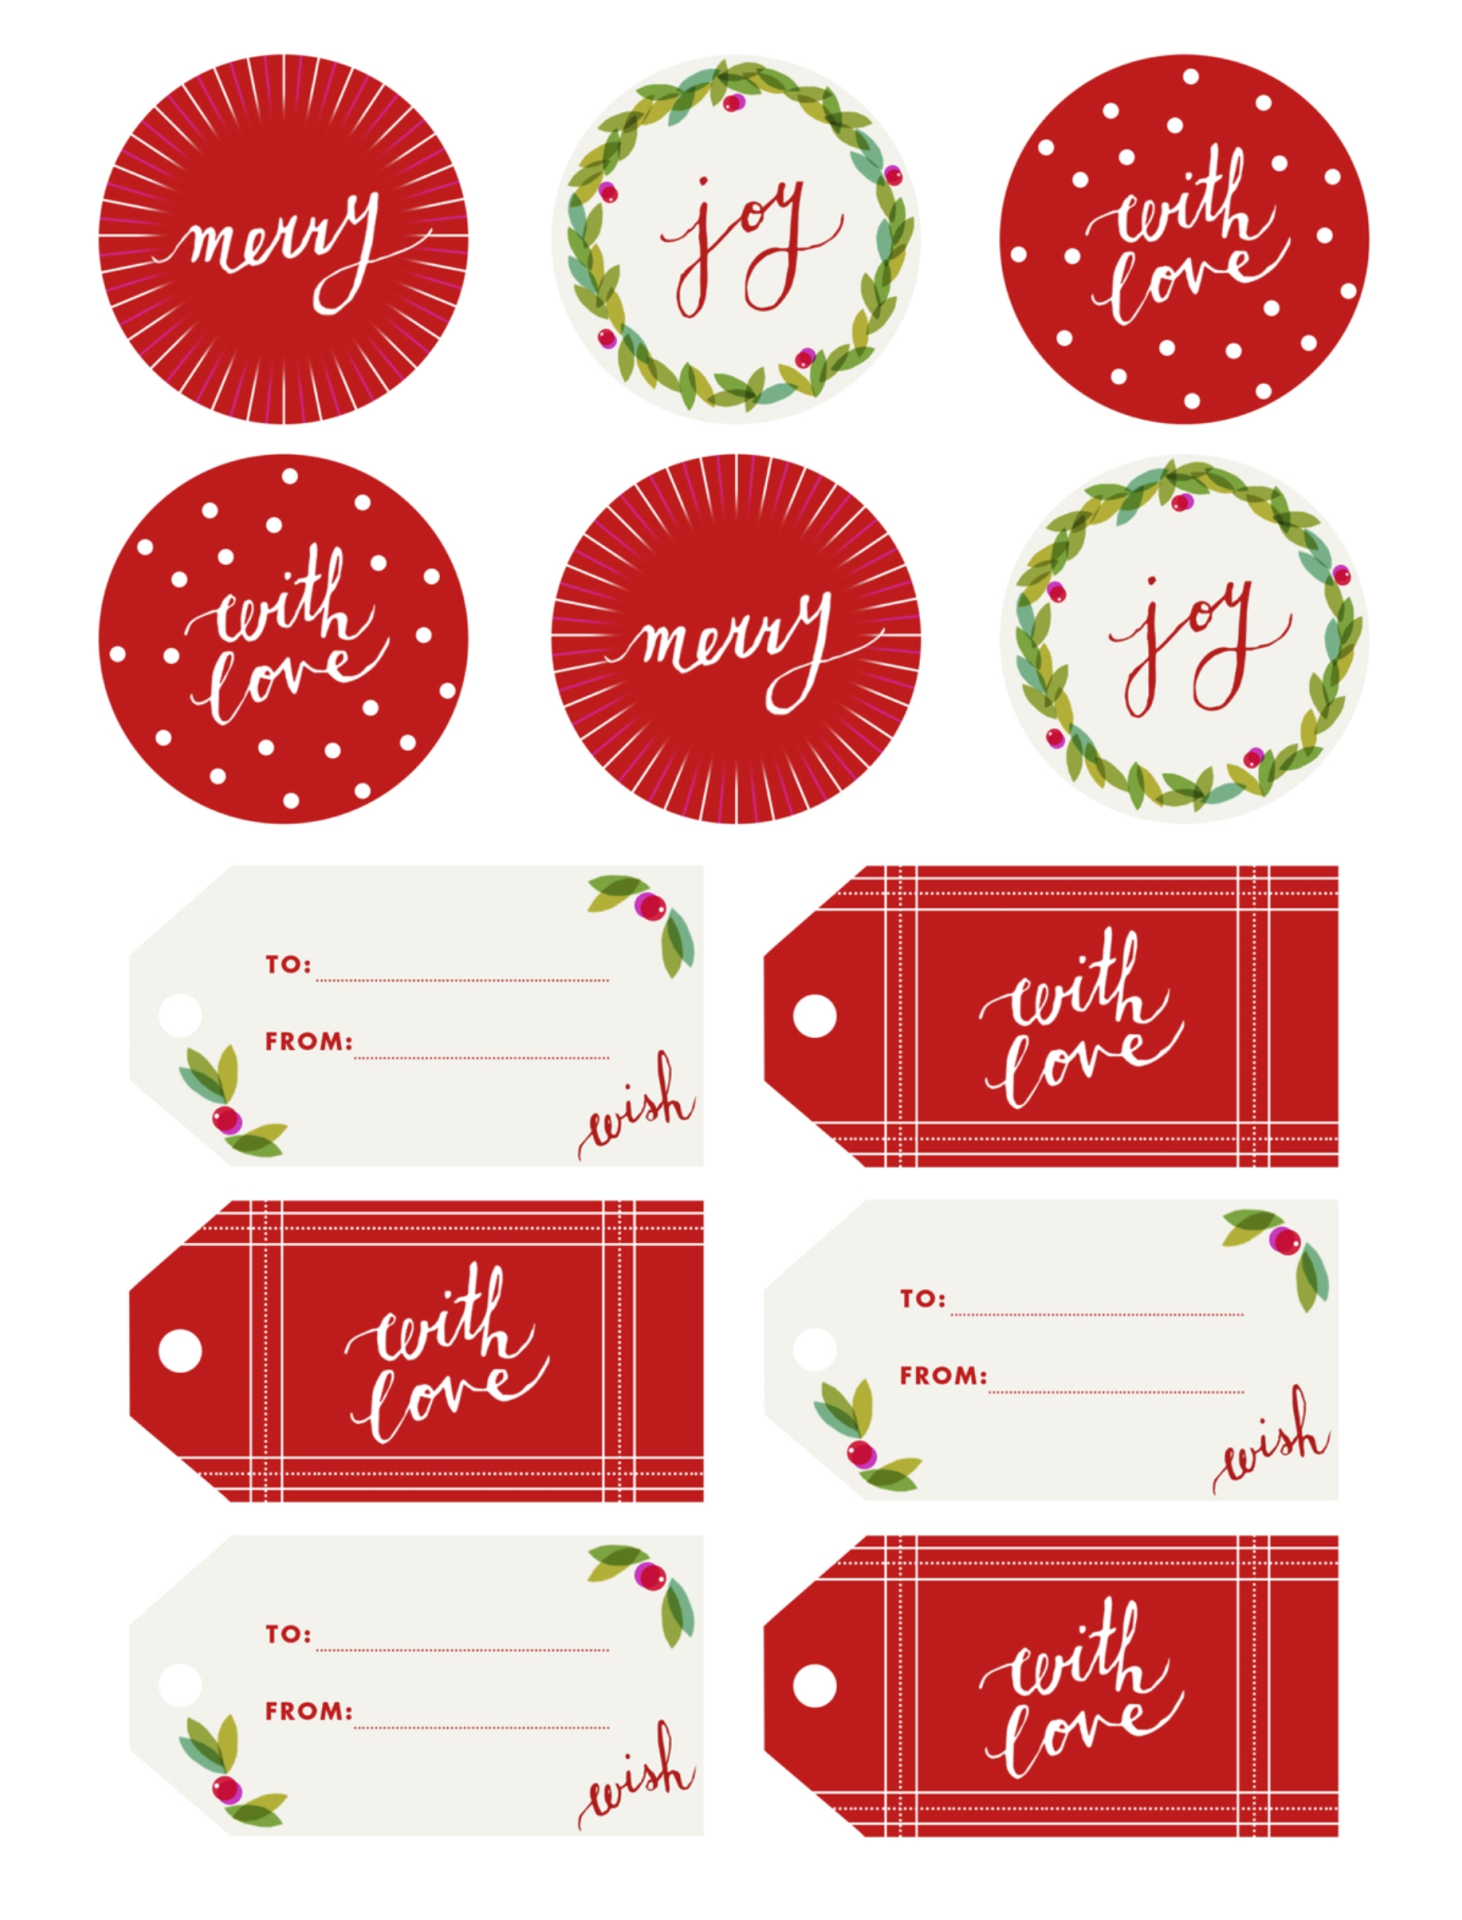 Free Printable Christmas Gift Tag Templates For Word Pdf